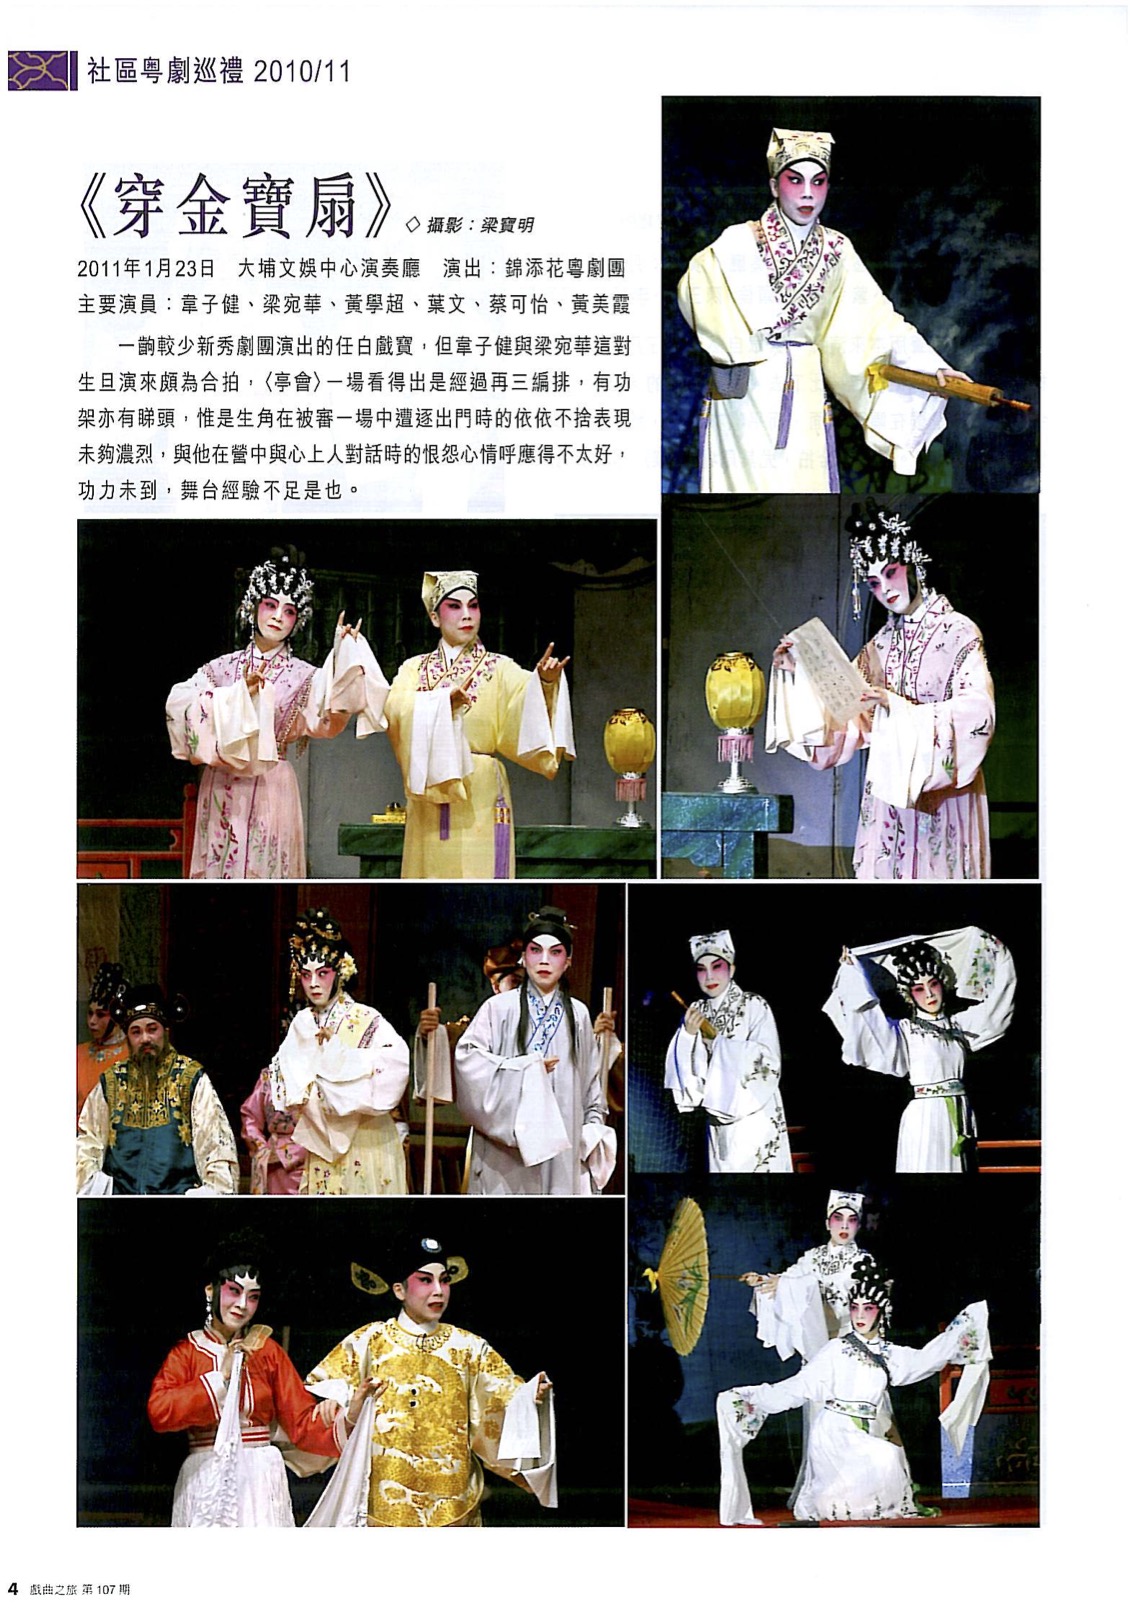 社區粵劇巡禮 2010/11 - 《穿金寶扇》